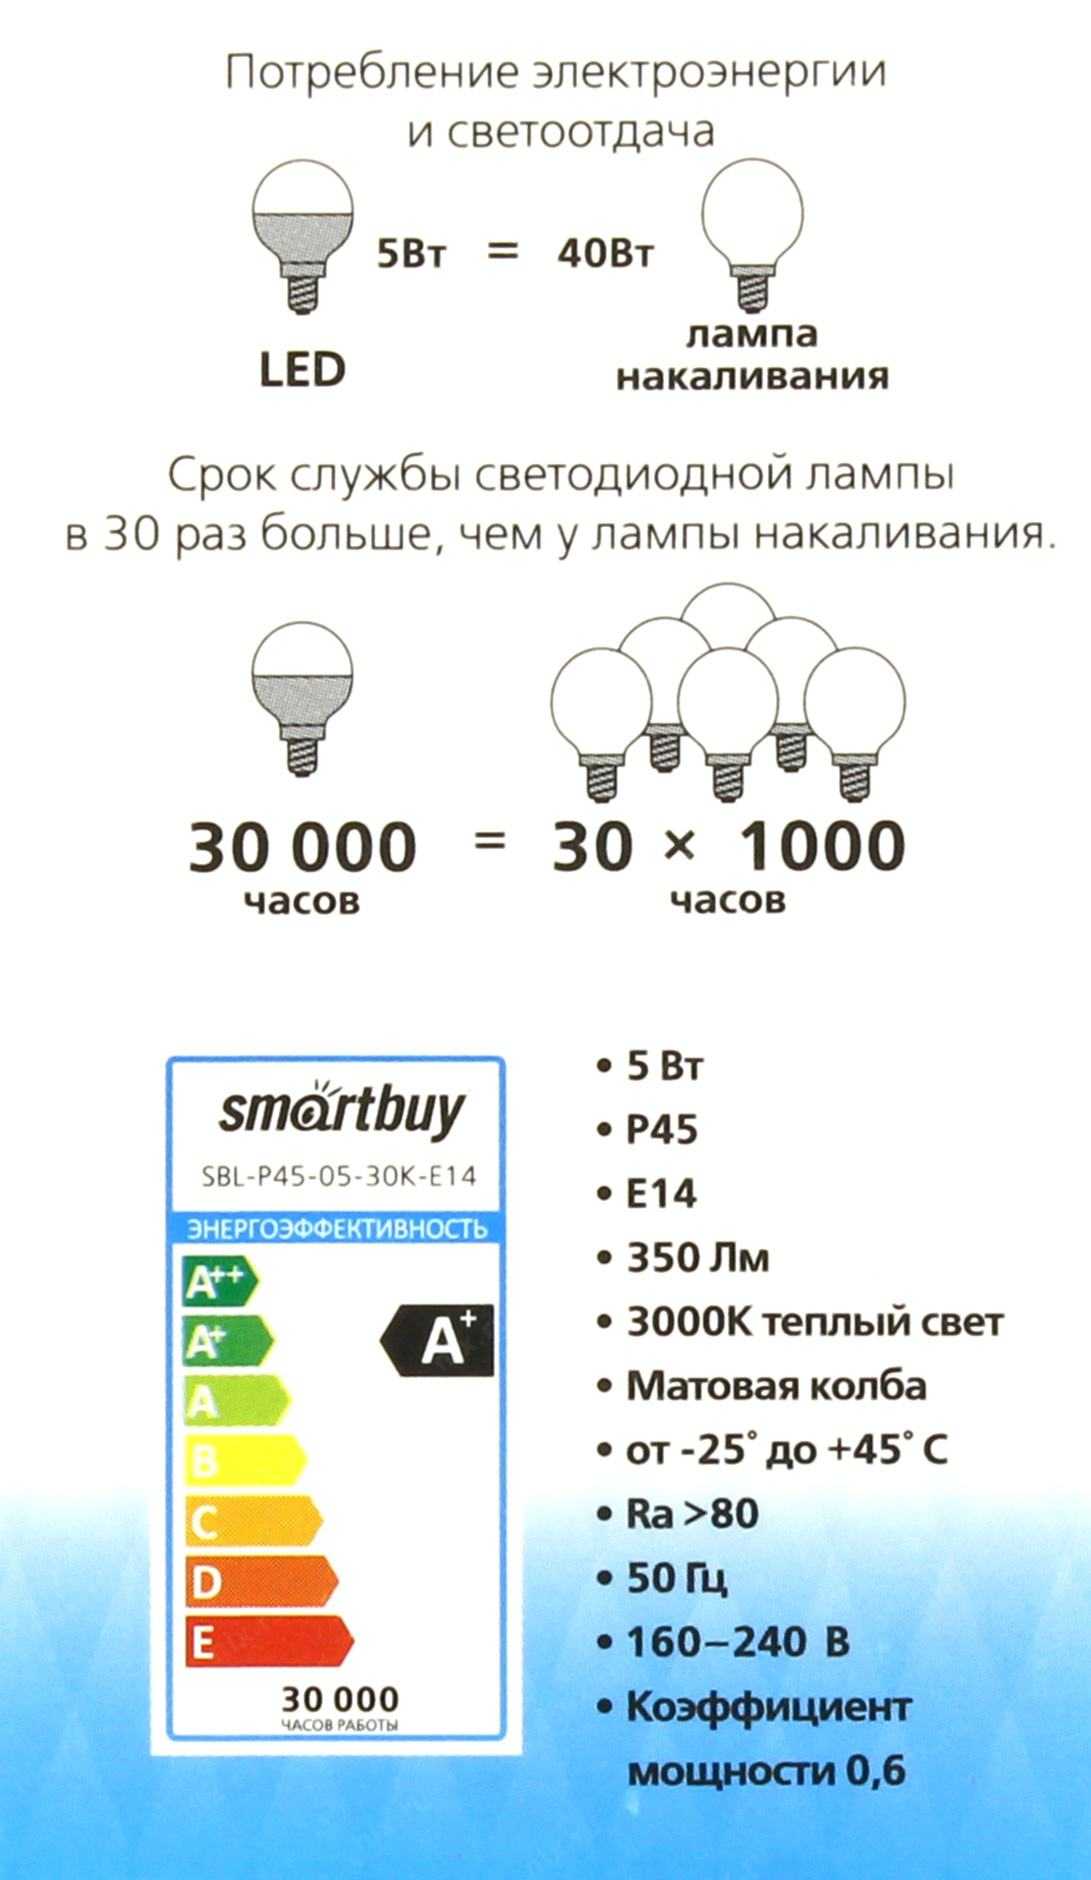 Расчет мощности трансформатора Например, в помещении имеется 8 галогенных ламп по 25 ватт каждая, работающие от напряжения 12В Общая мощность составит 8х25  200 Вт